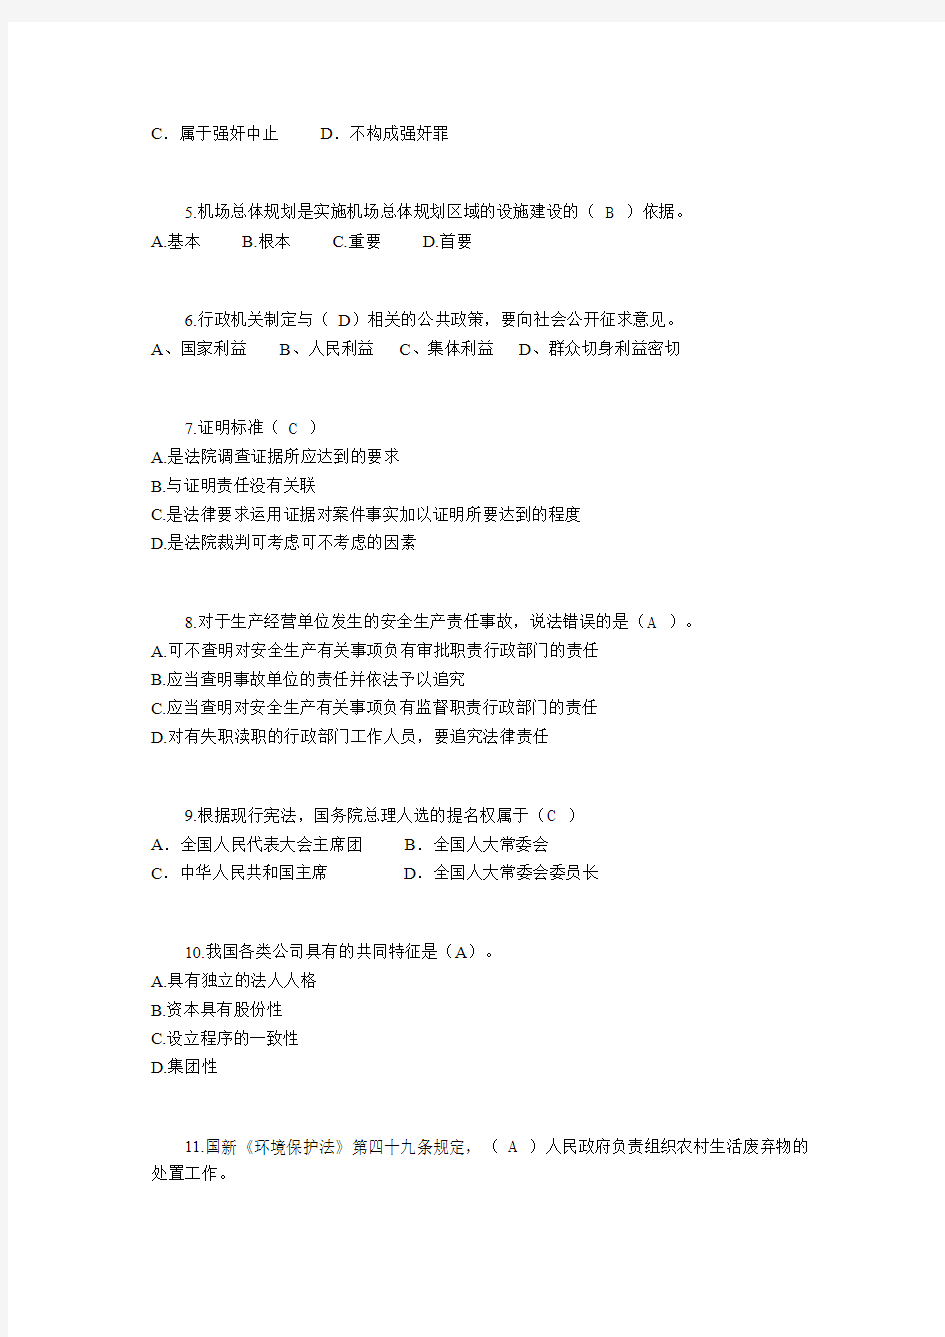 河北省2016年司法考试《司法制度》模拟试题